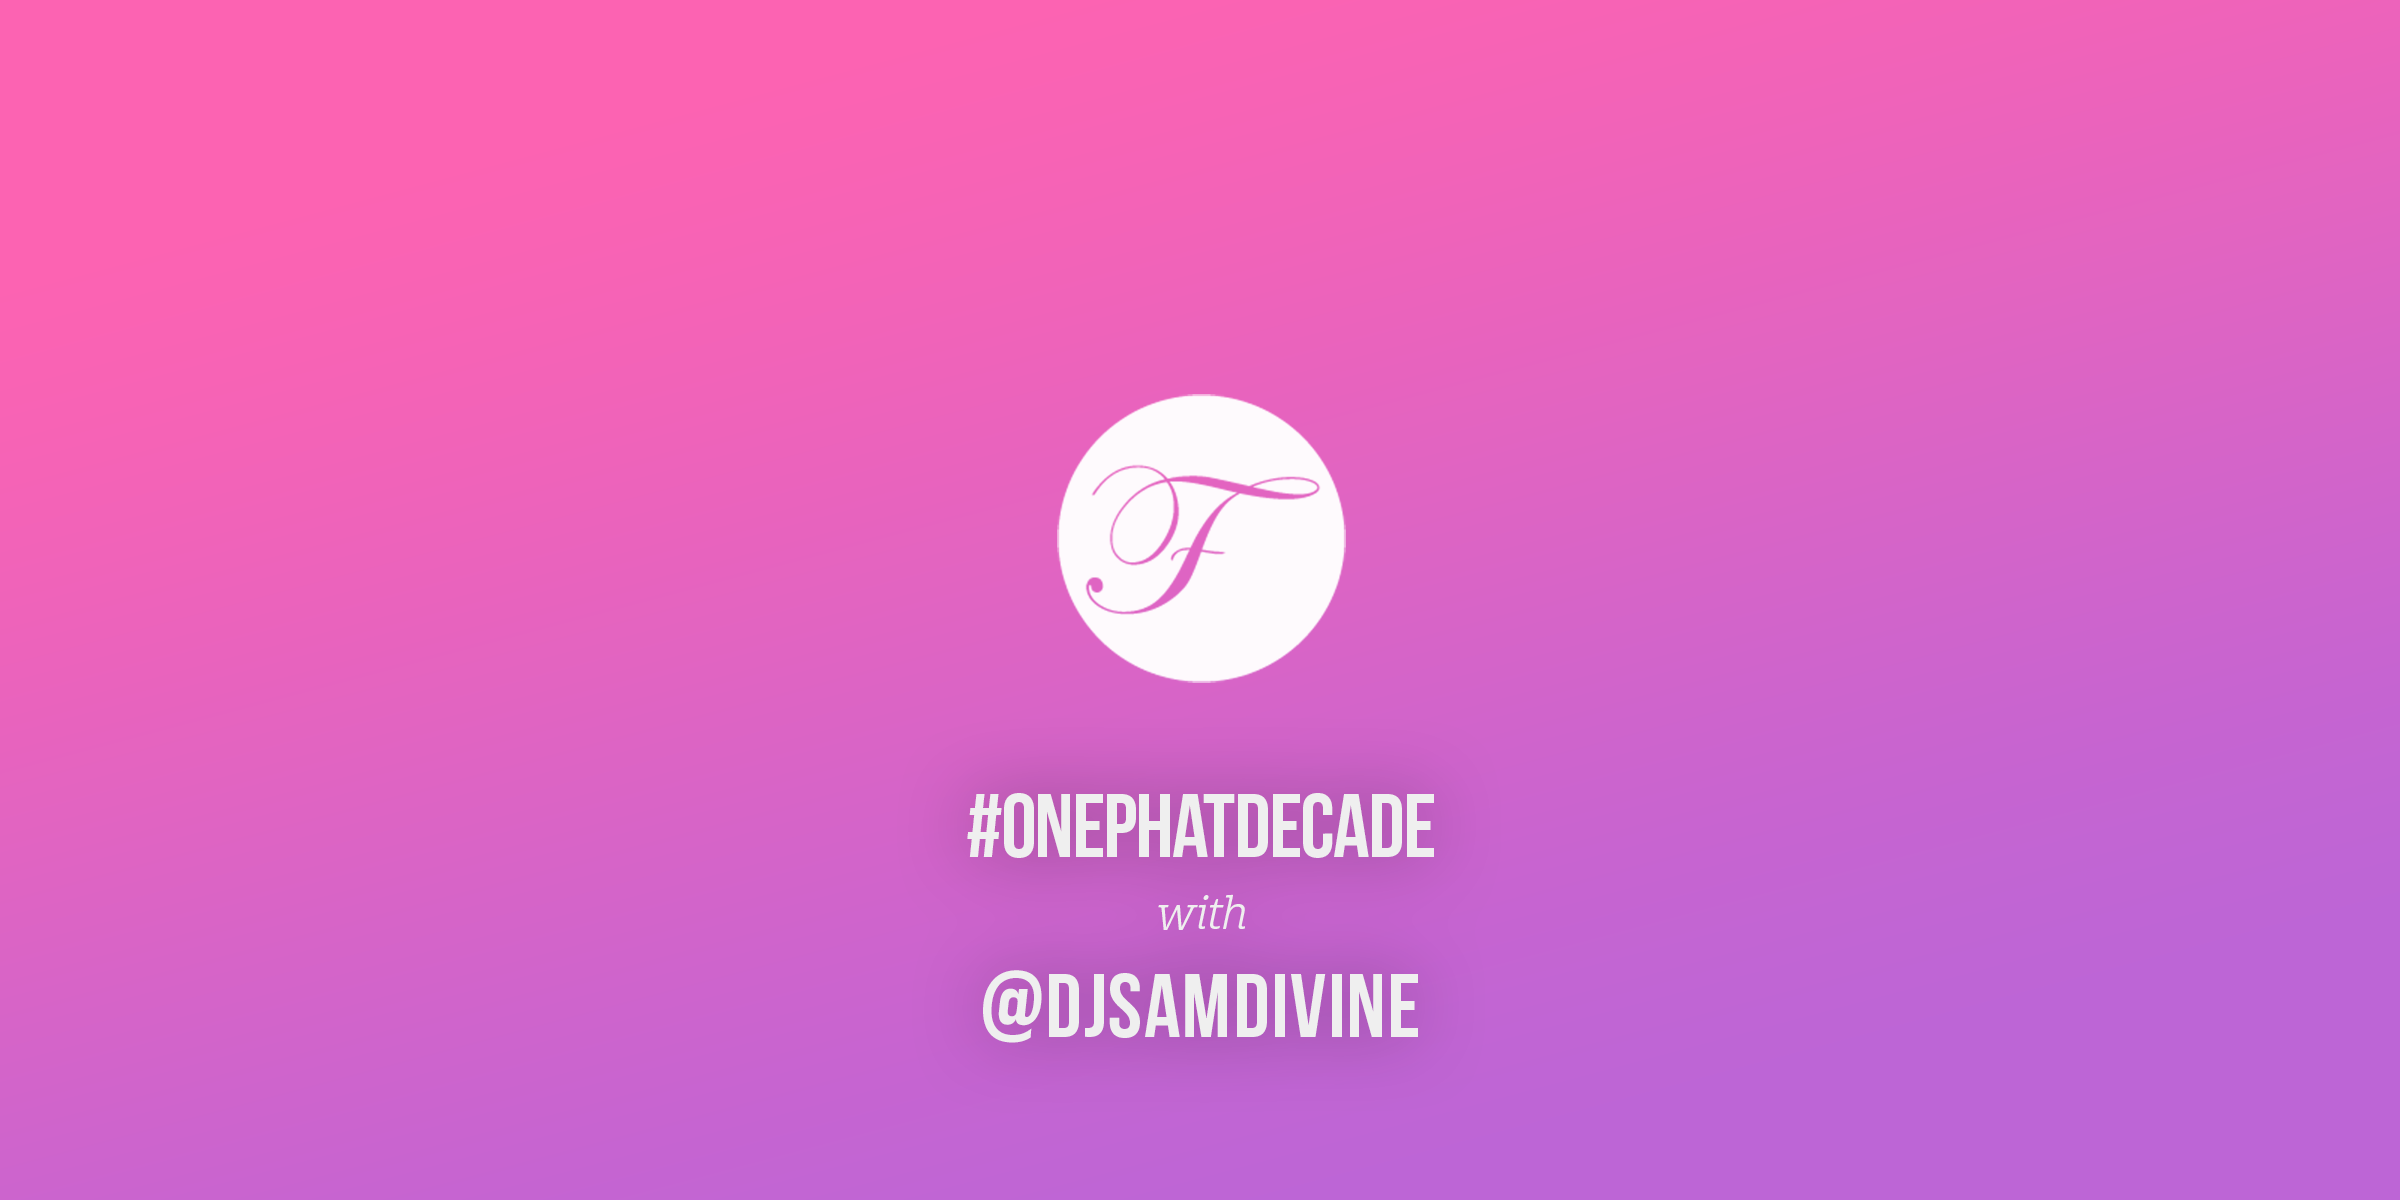 #ONEPHATDECADE Pt 2 – Sam Divine Live at We Are FSTVL 2015